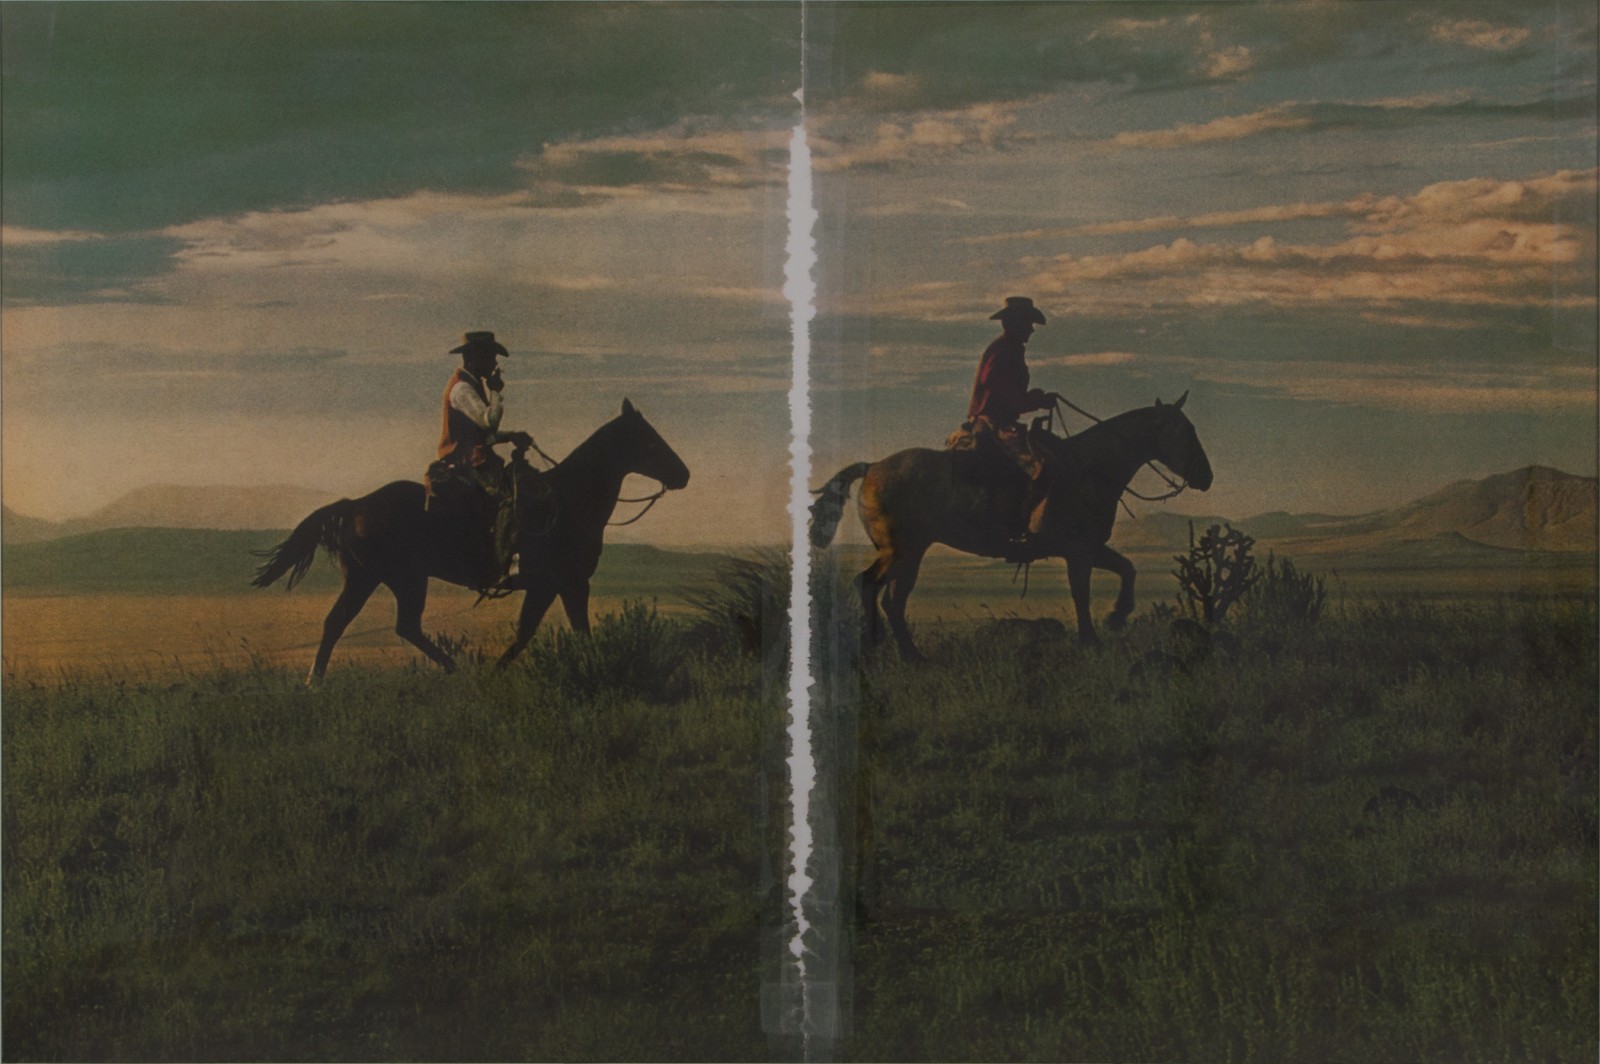 Richard Prince: Untitled (cowboy) | LACMA